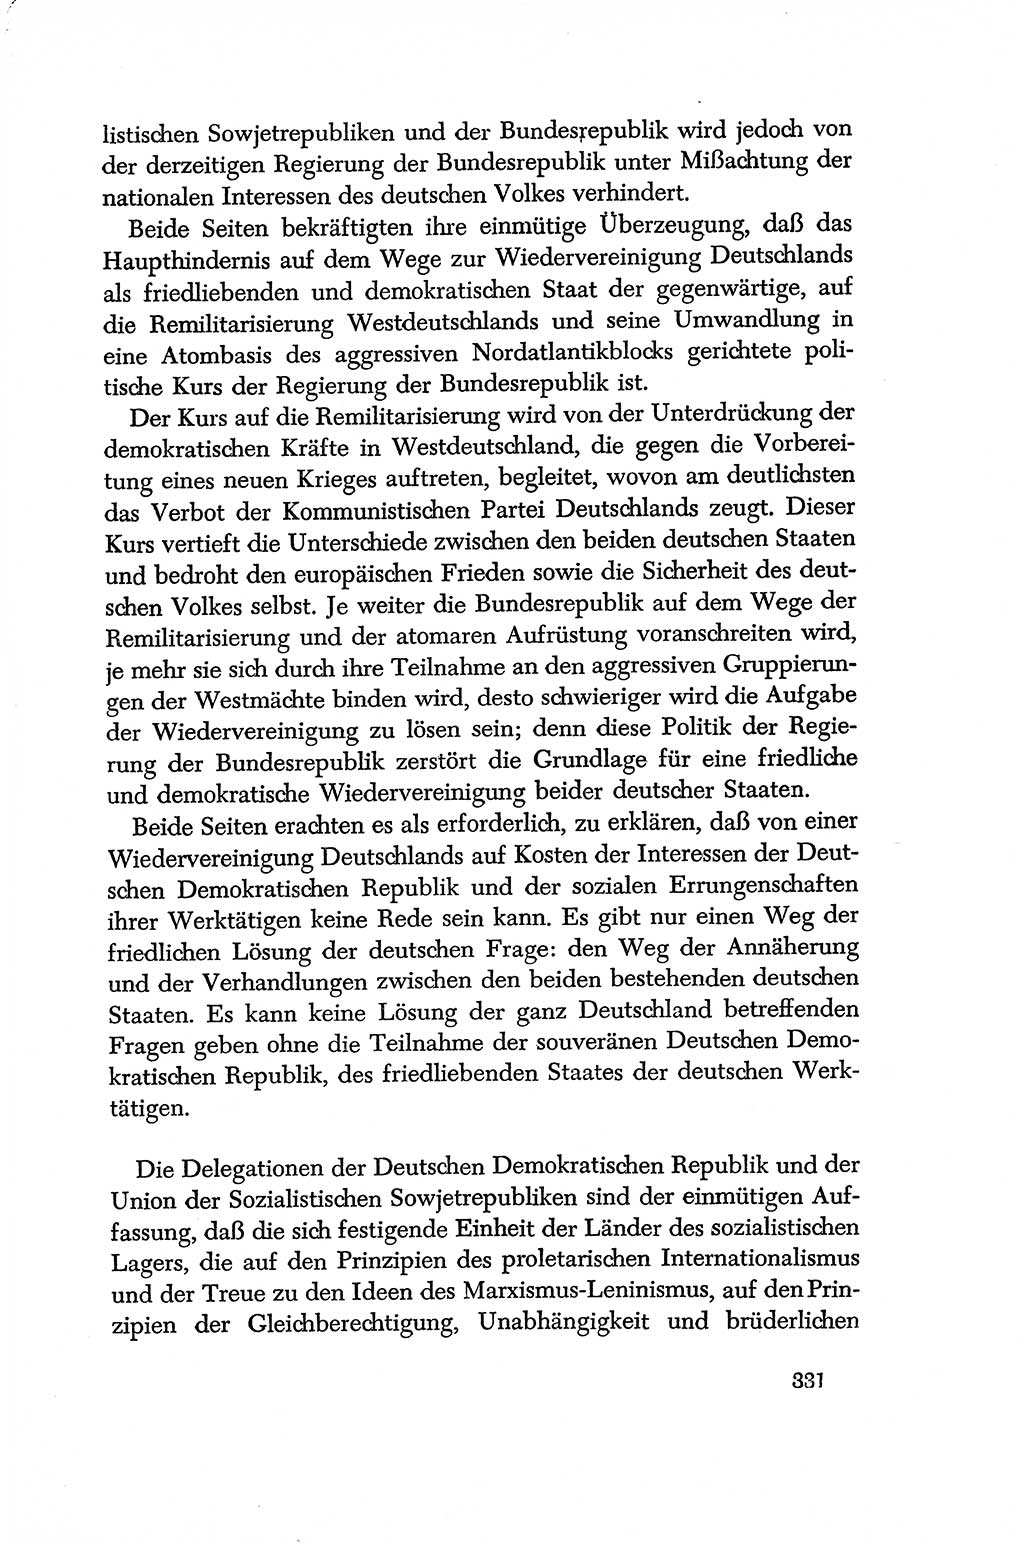 Dokumente der Sozialistischen Einheitspartei Deutschlands (SED) [Deutsche Demokratische Republik (DDR)] 1956-1957, Seite 331 (Dok. SED DDR 1956-1957, S. 331)